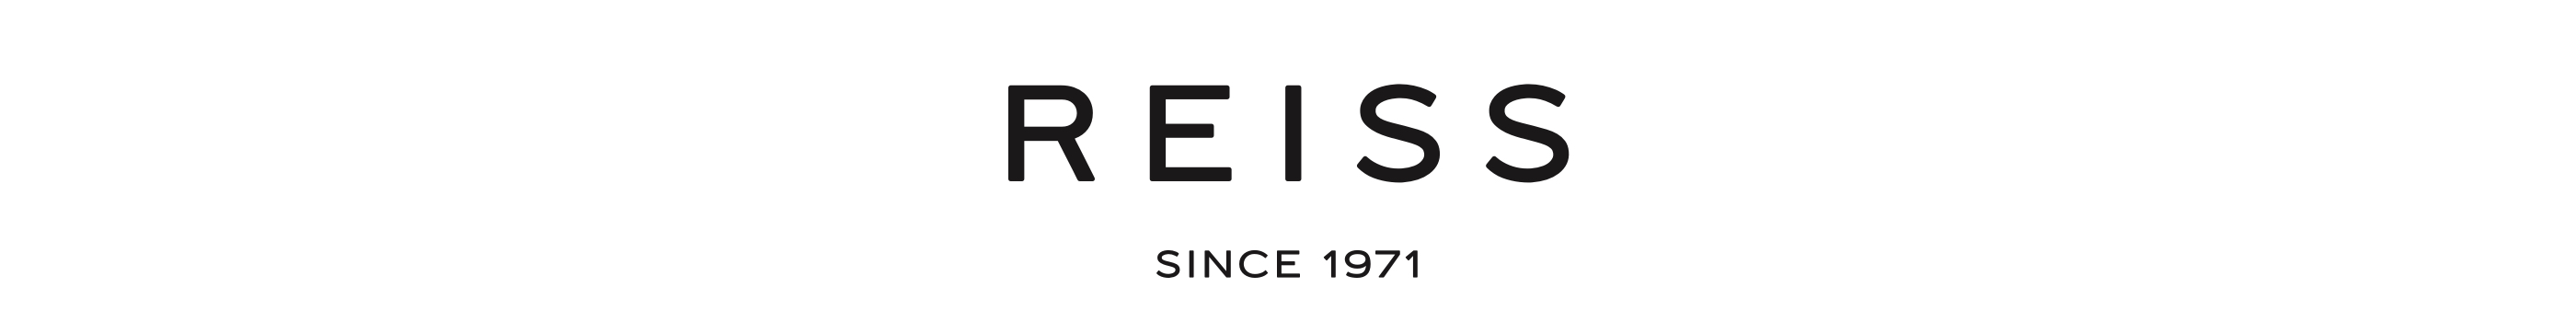 Reiss-Logo-dt